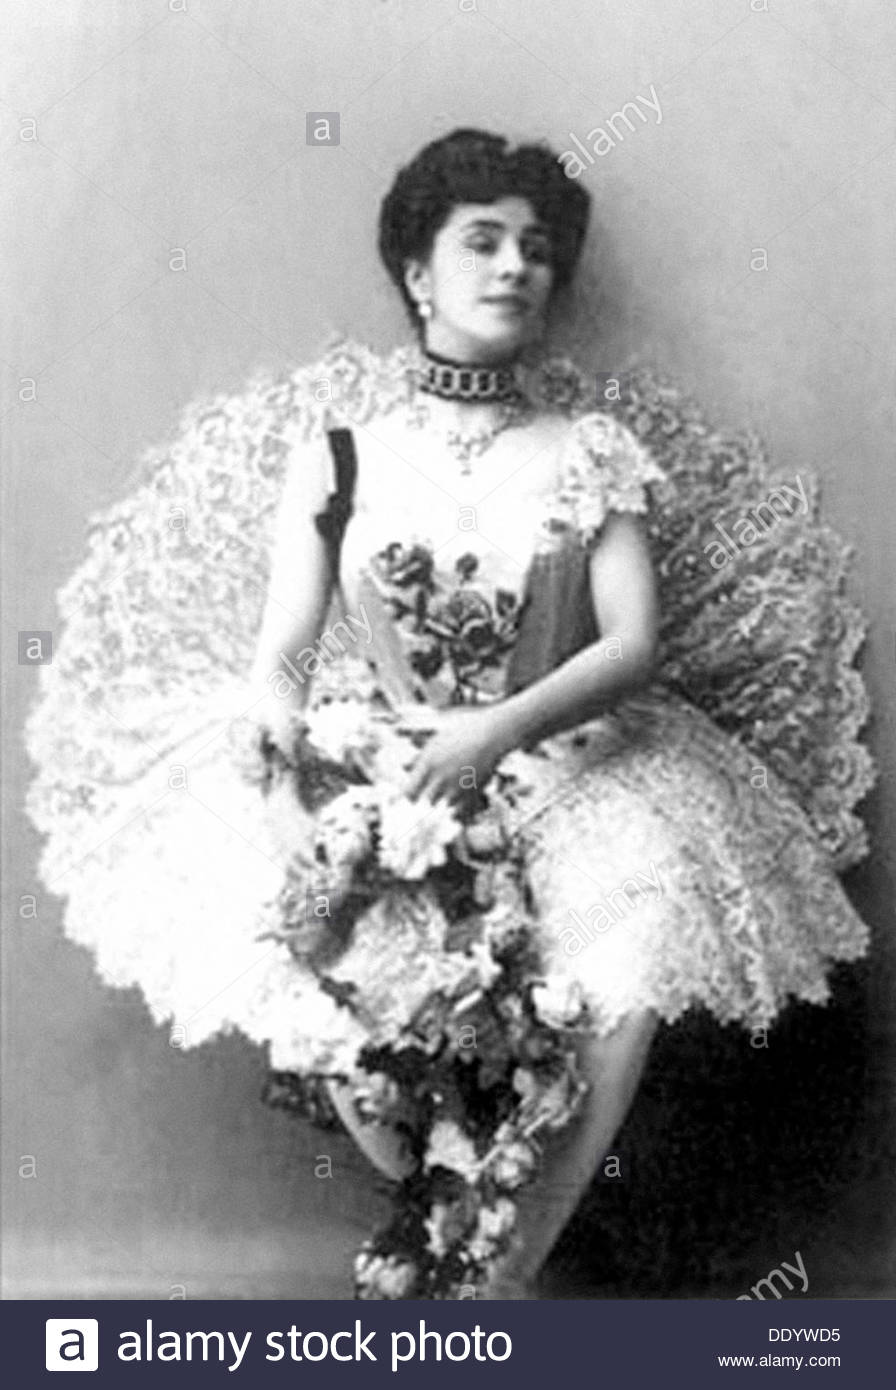 Mathilde Kschessinska, Russian prima ballerina, 1900. Artist: Anon Stock  Photo - Alamy